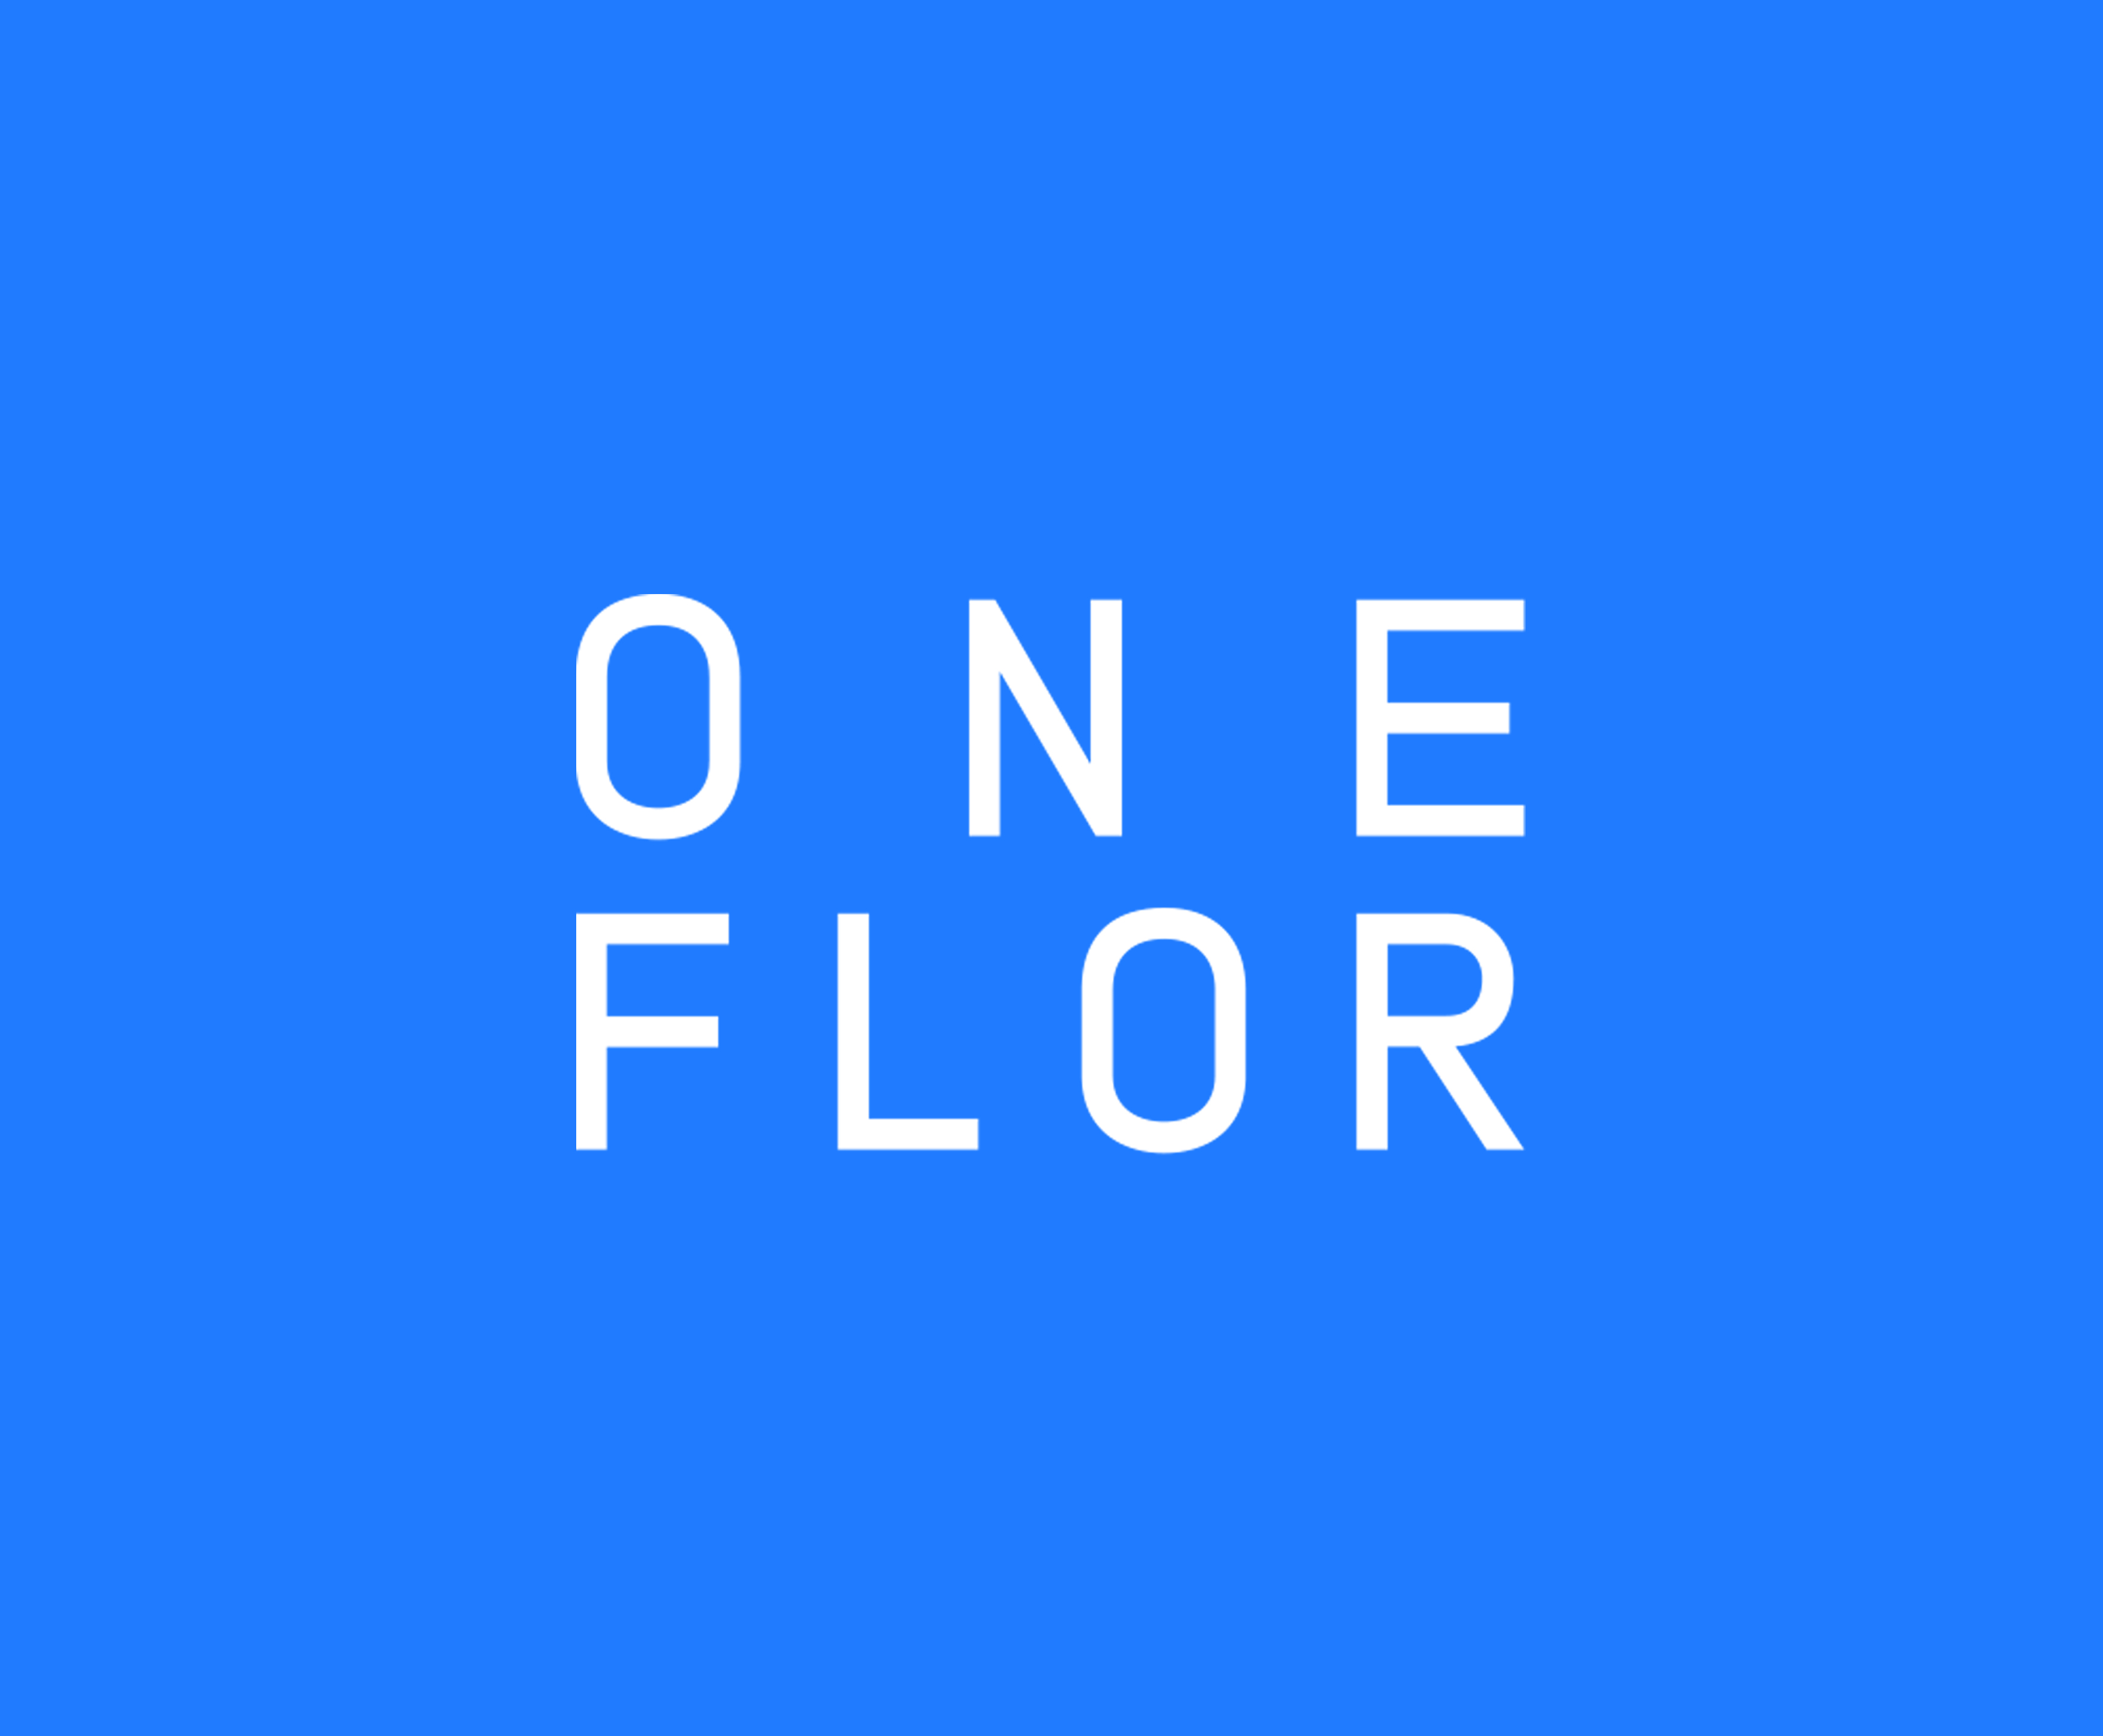 Web_One Flor